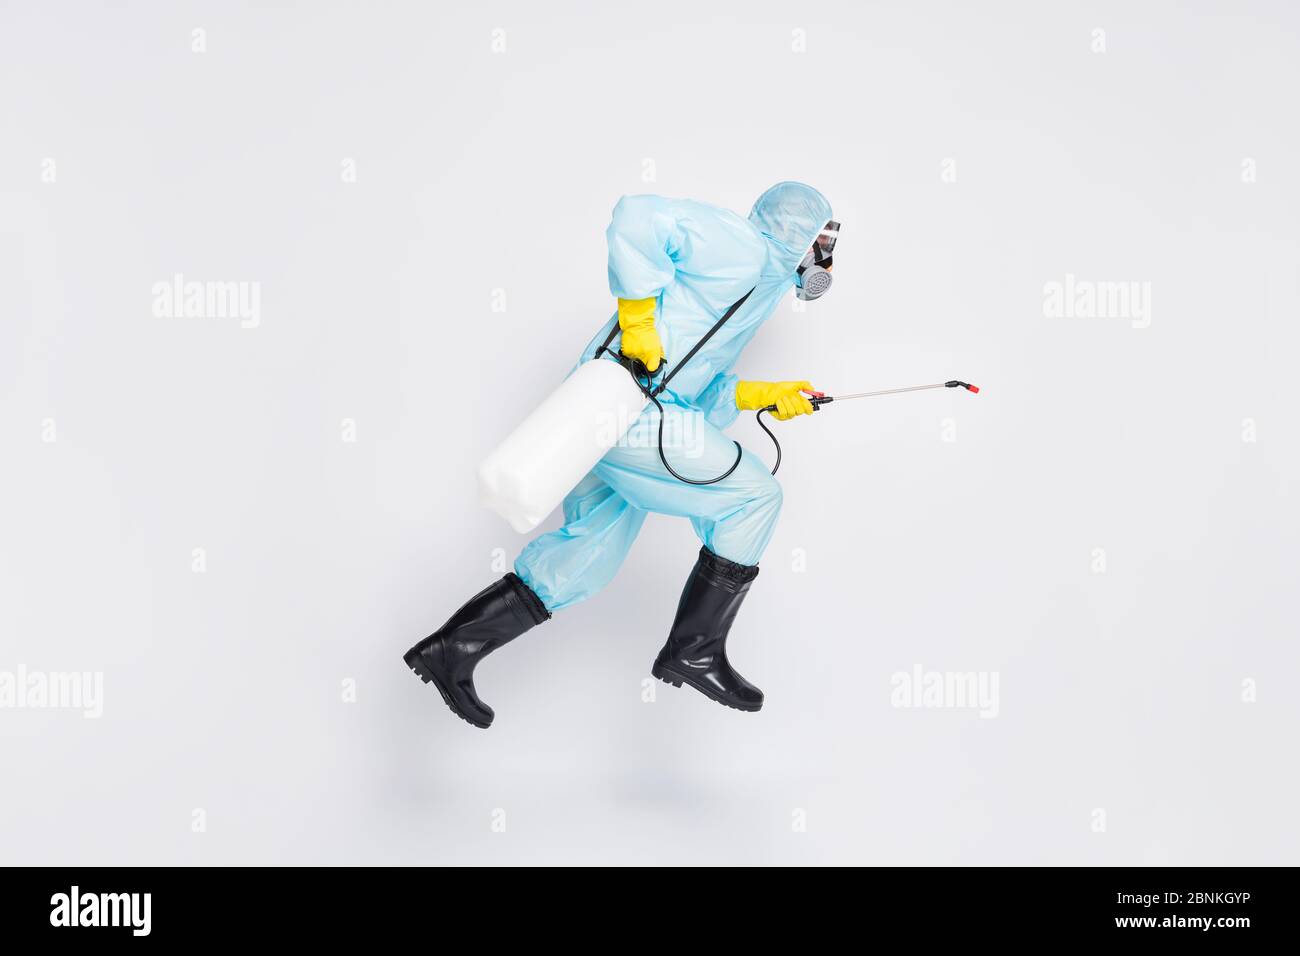 Ganzkörper-Profil Seite Foto Mann springen laufen Eile desinfizieren covid  Verbreitung Haus tragen weiß hazmat Anzug gelb Gummi Latex Handschuhe  Brille verwenden Sprayer Stockfotografie - Alamy